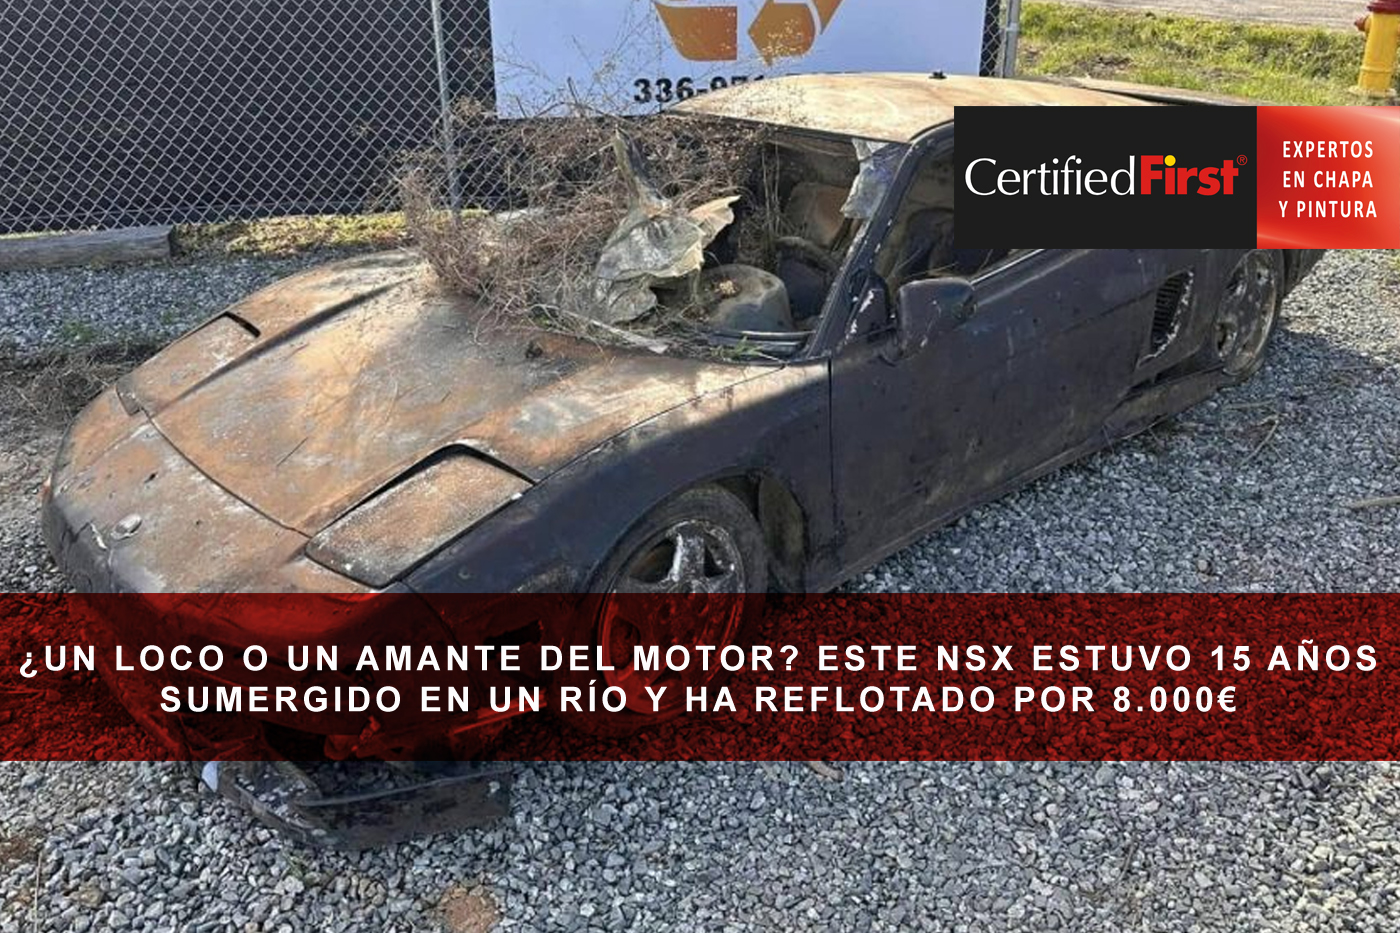 ¿Un loco o un amante del motor? La historia del NSX que estuvo 15 años sumergido en un río y ha reflotado por 8.000€